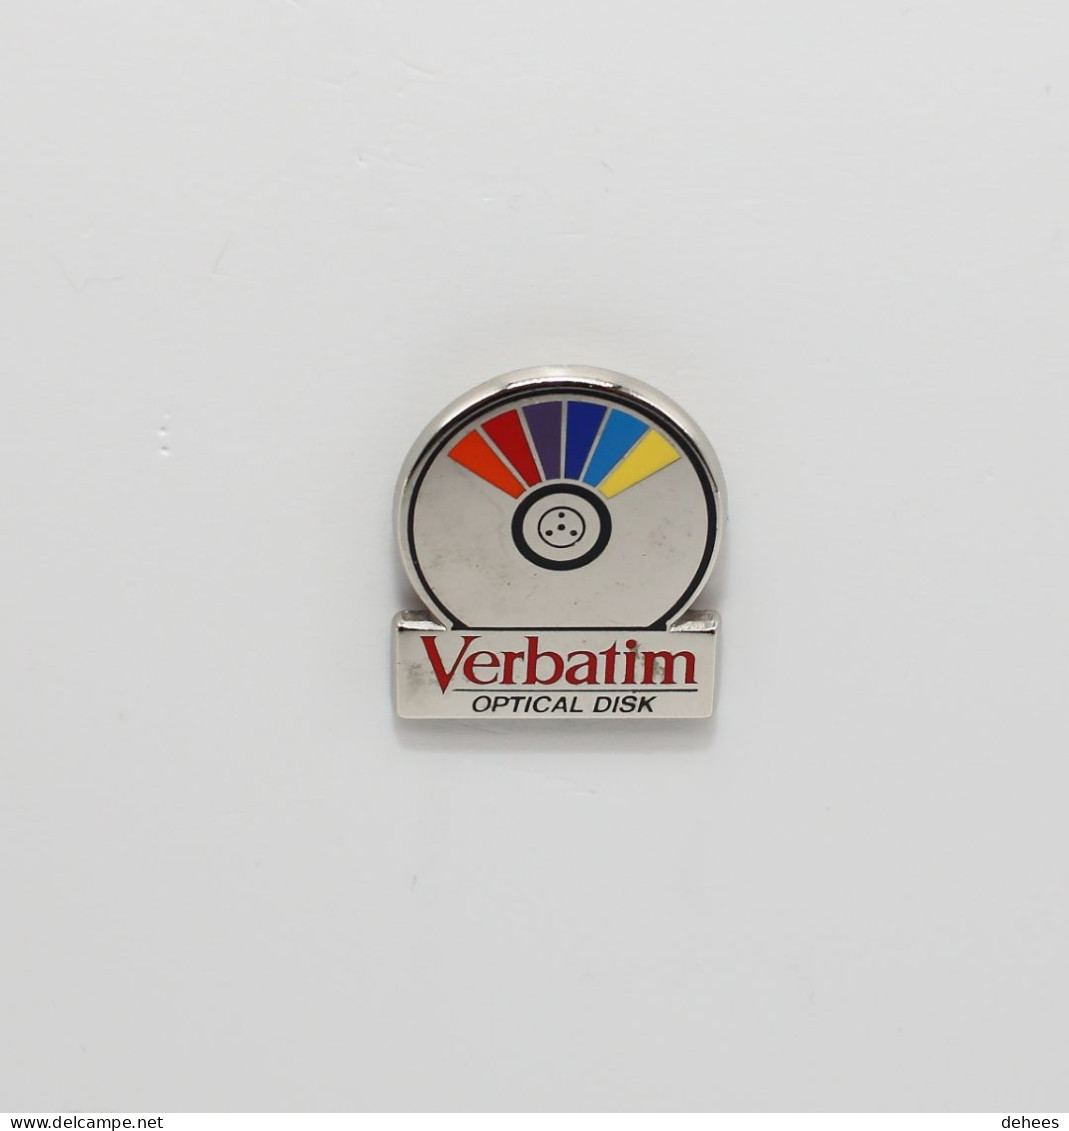 Verbatim, Optical Disk - Computers